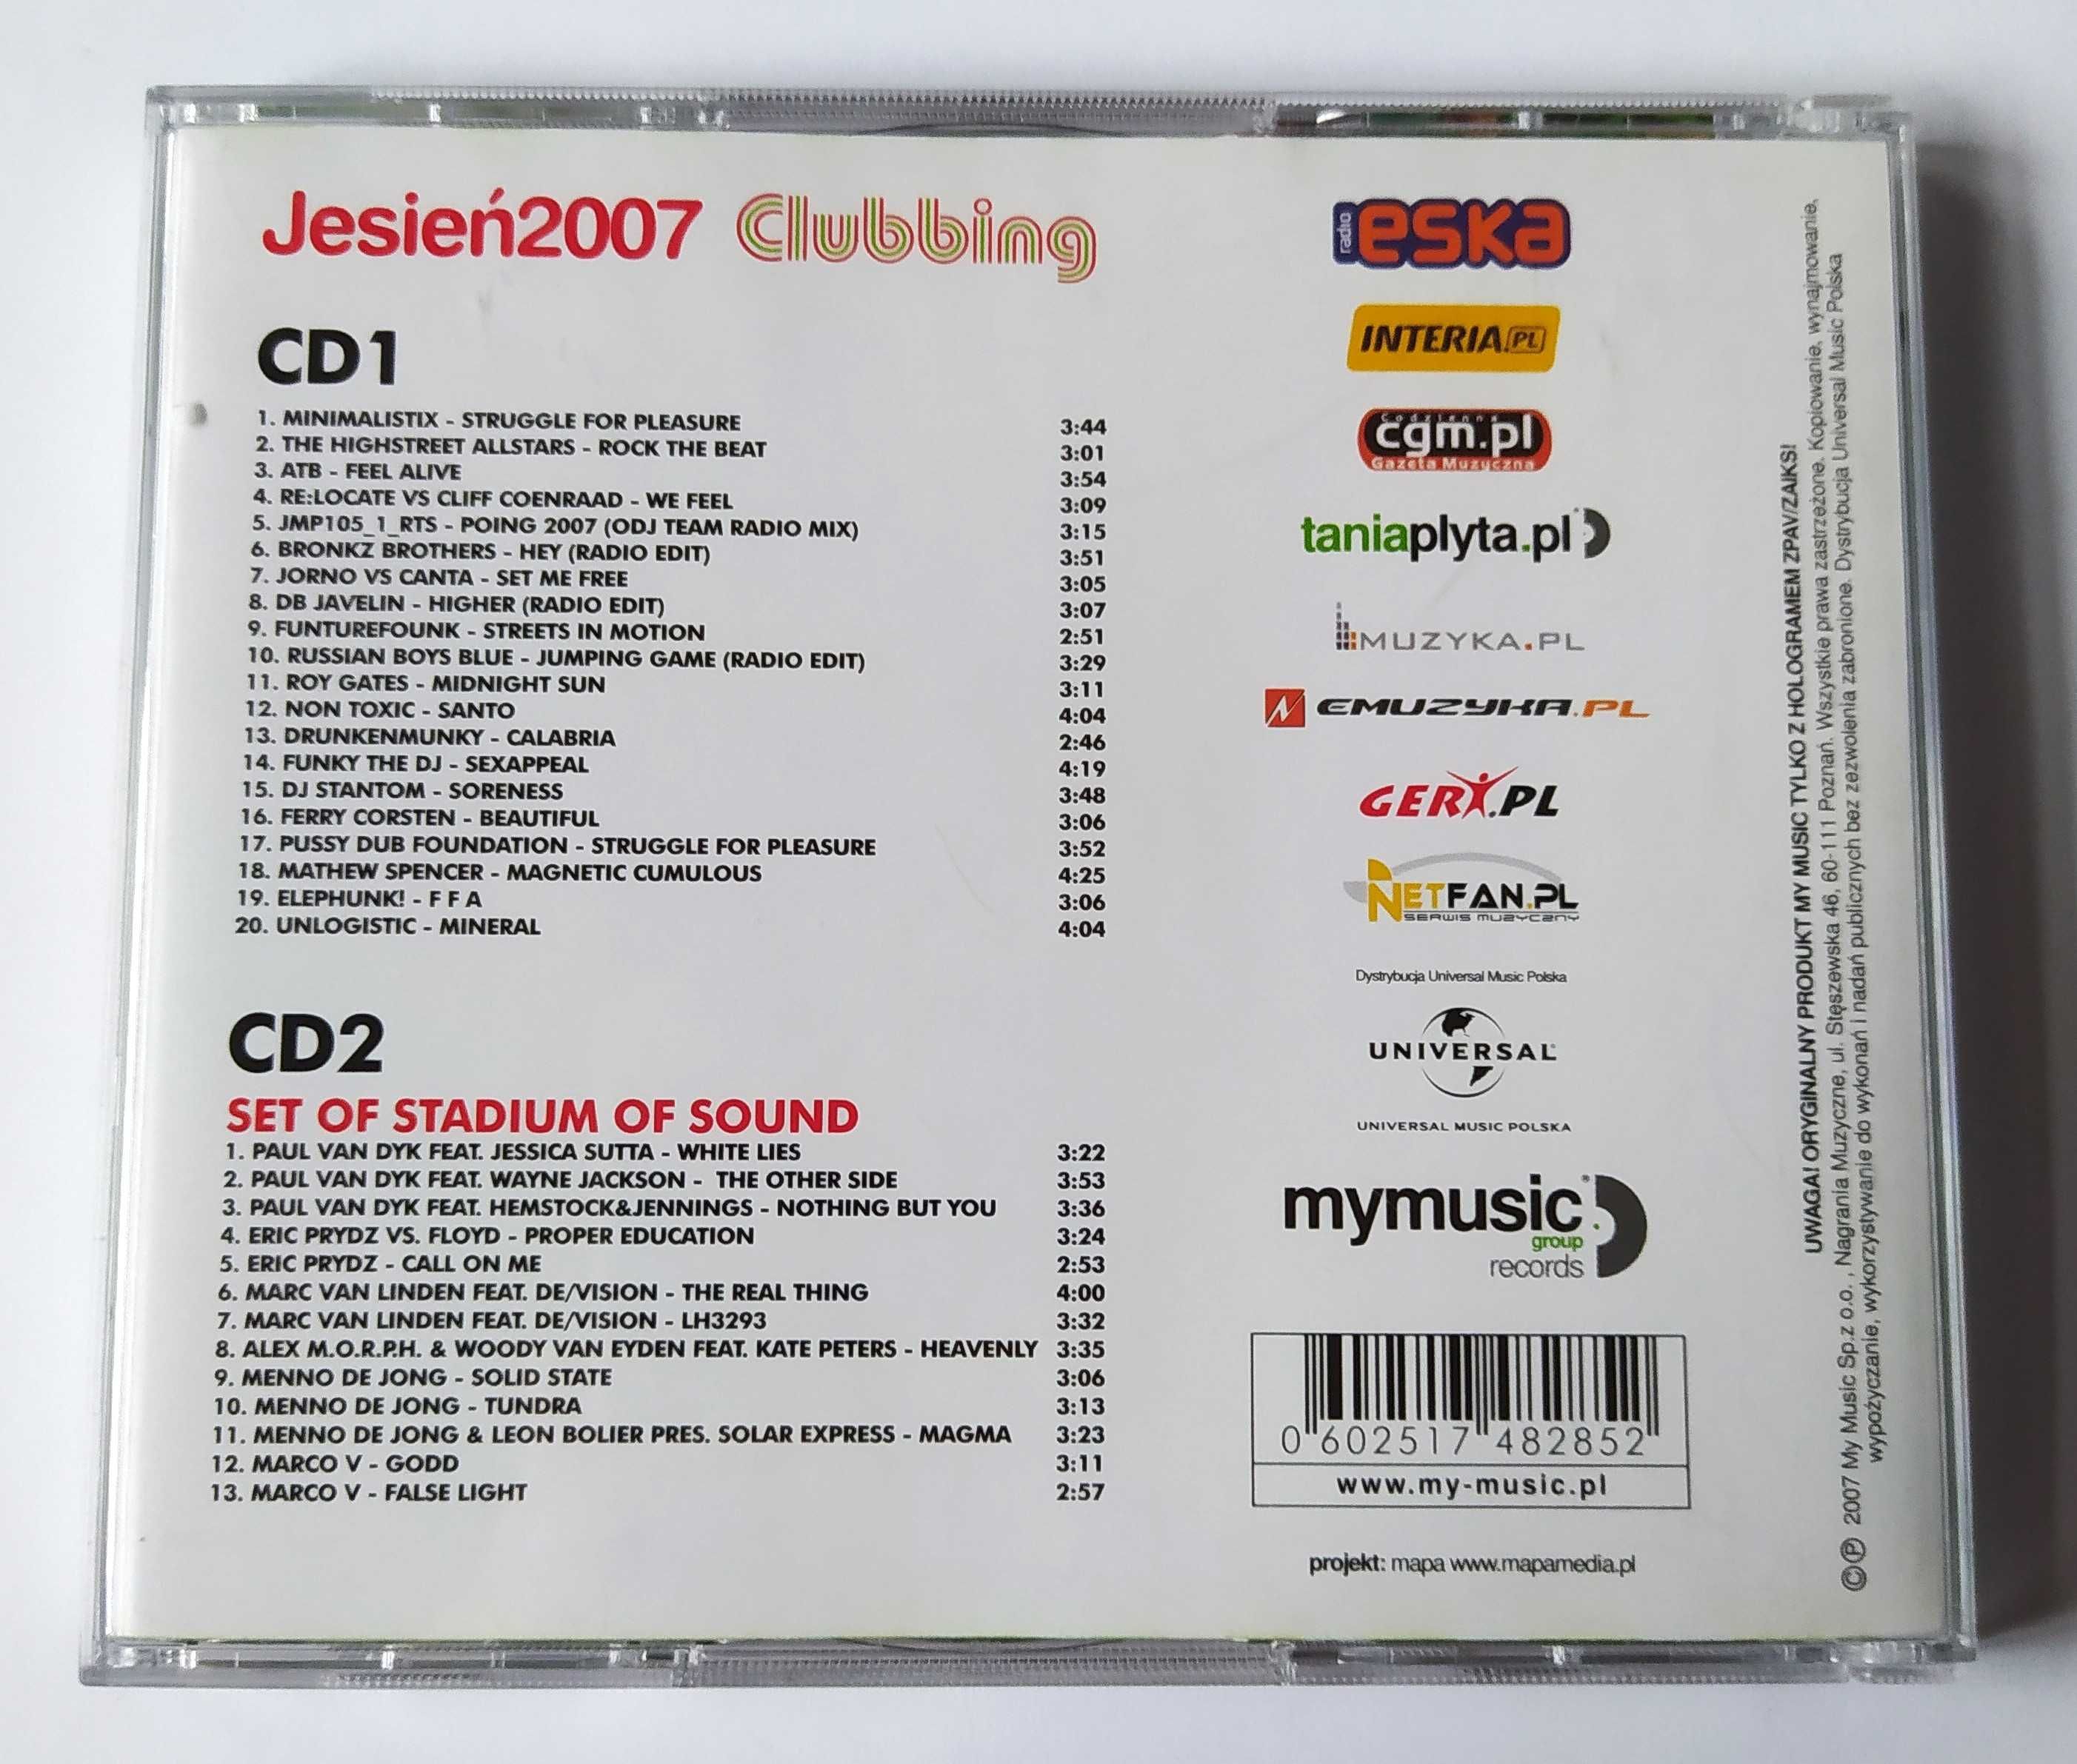 Jesień 2007 W Rytmie Clubbing - 2 CD